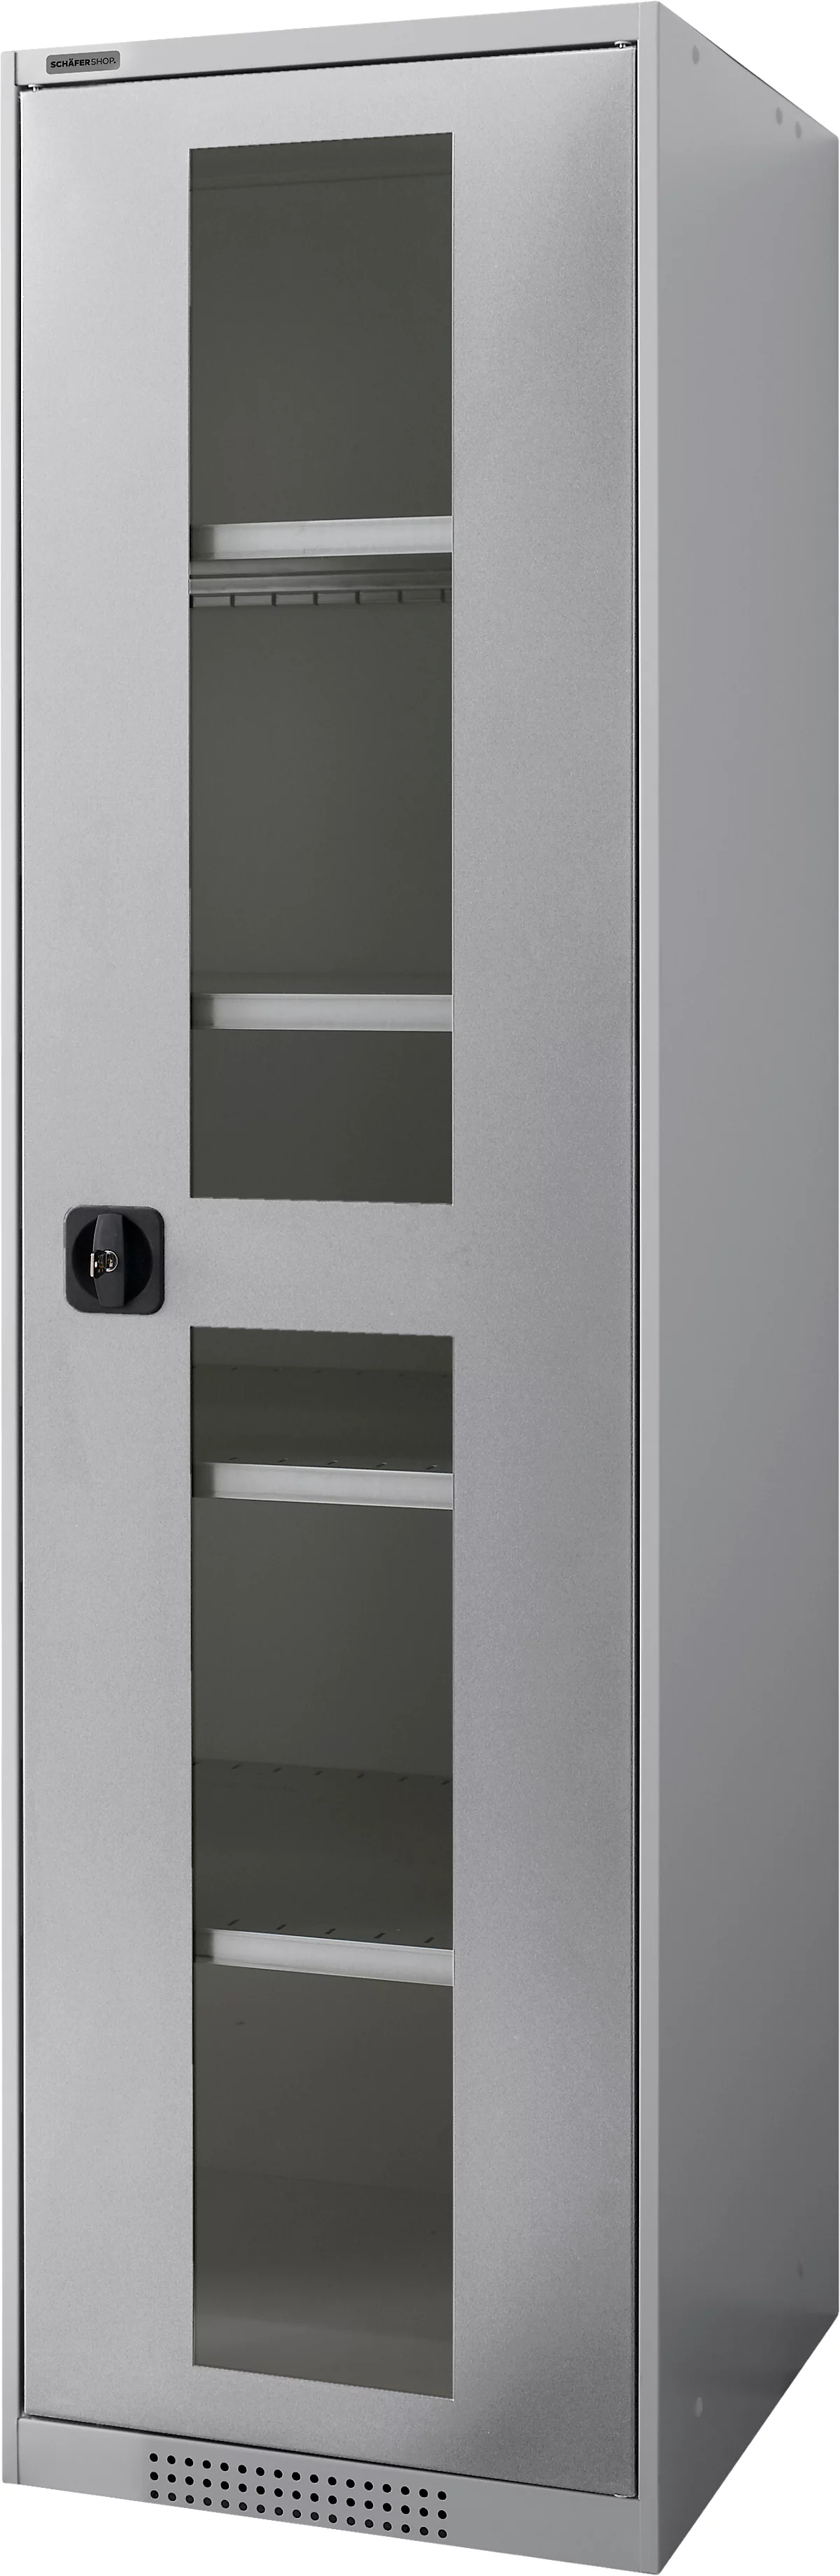 Schäfer Shop Genius armario con puerta giratoria FS, acero, mirilla, agujeros de ventilación, AN 545 x F 520 x AL 1950 mm, 5 OH, aluminio blanco/aluminio blanco, hasta 250 kg 